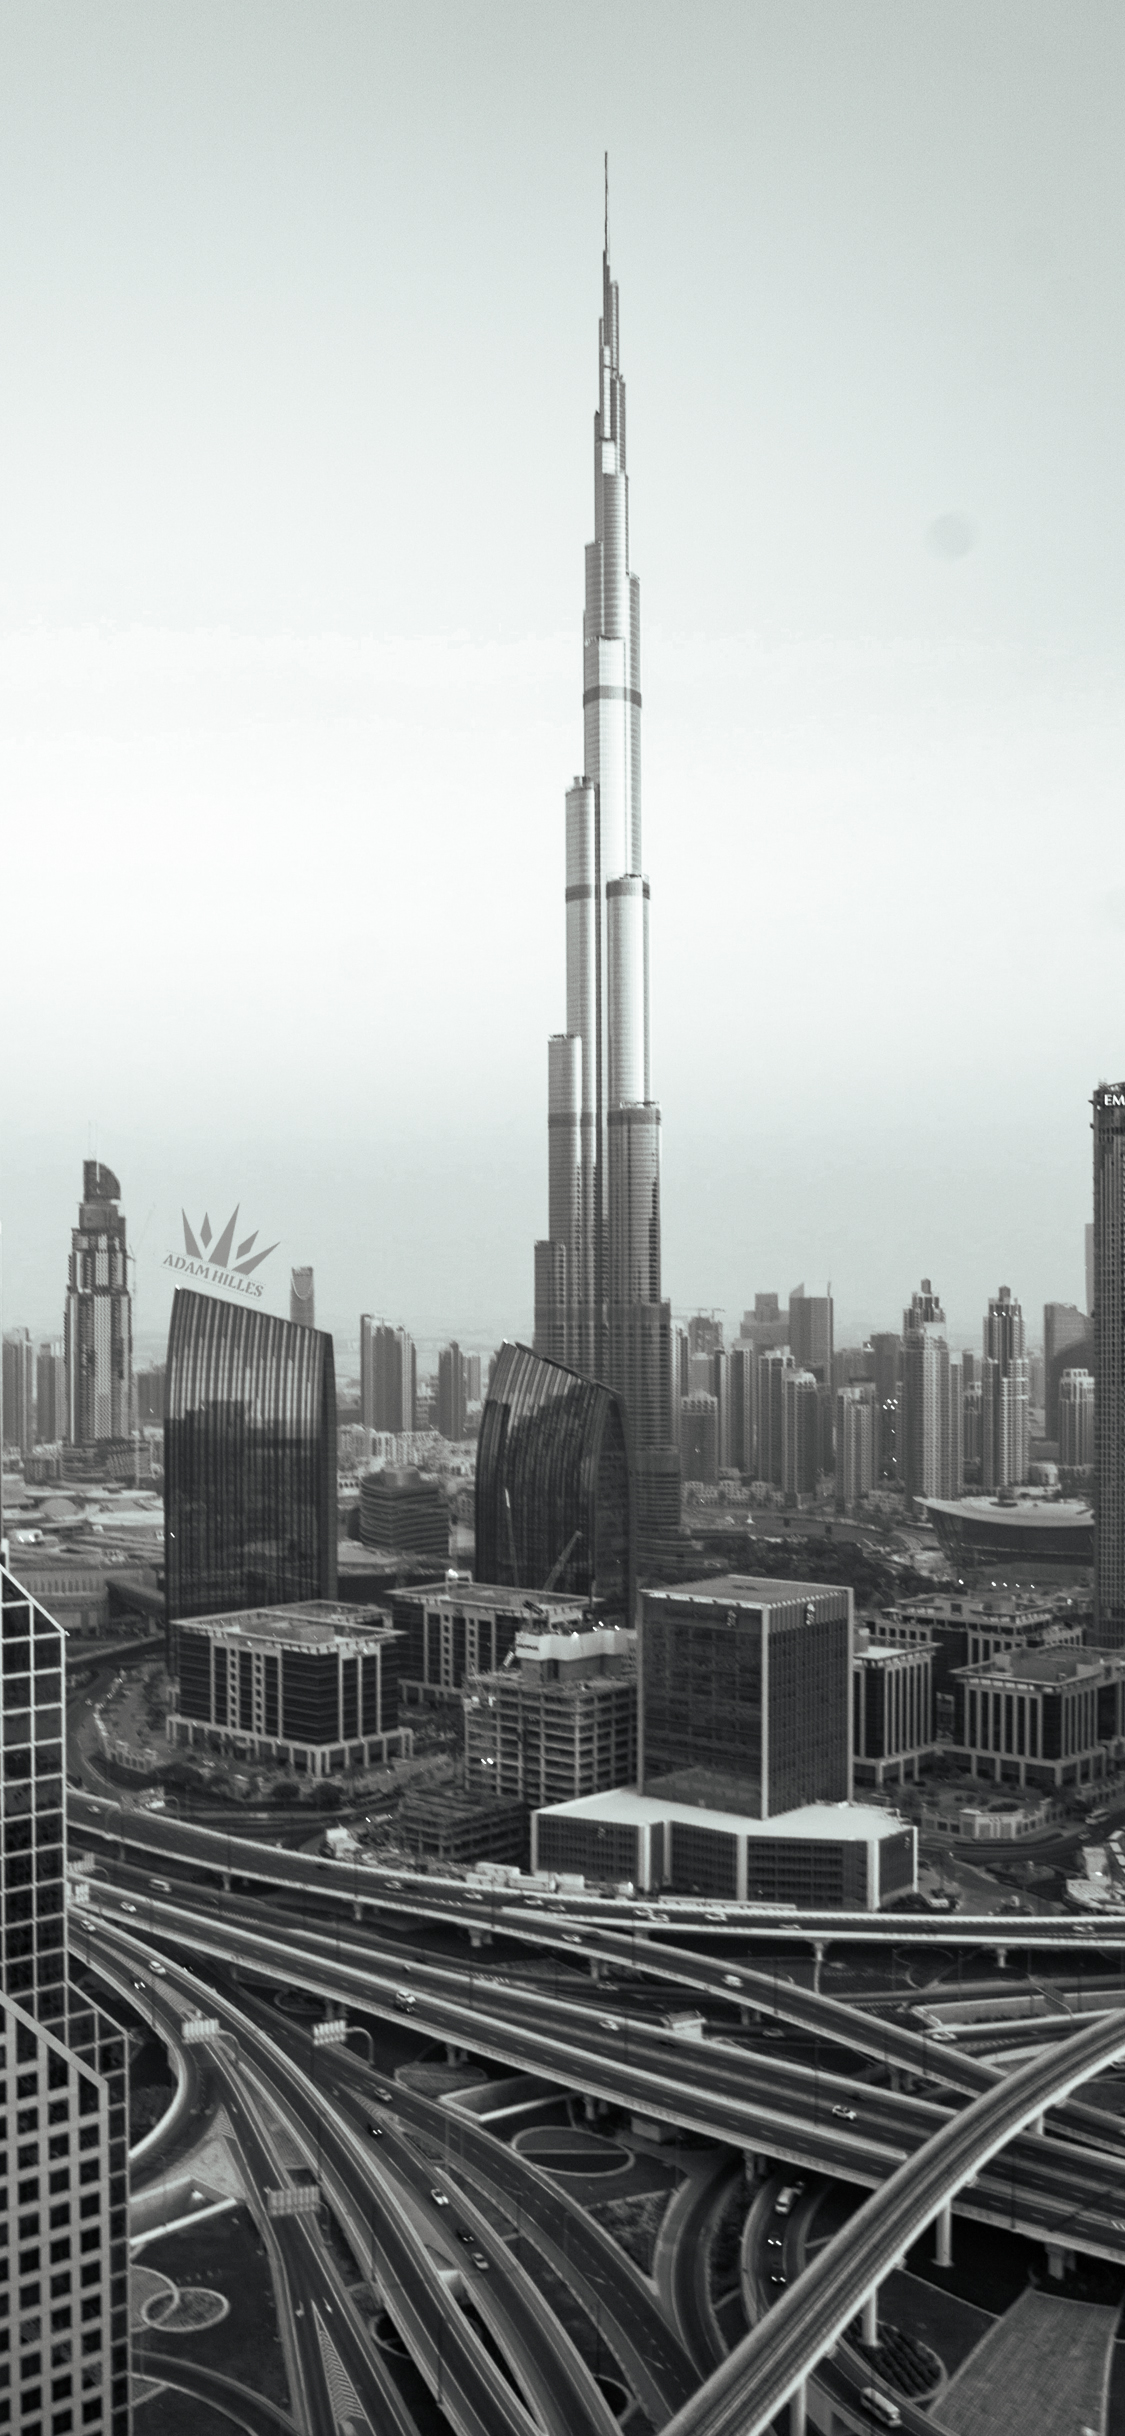 تحميل خلفية جوال برج خليفة Burj Khalifa Mobile Wallpaper